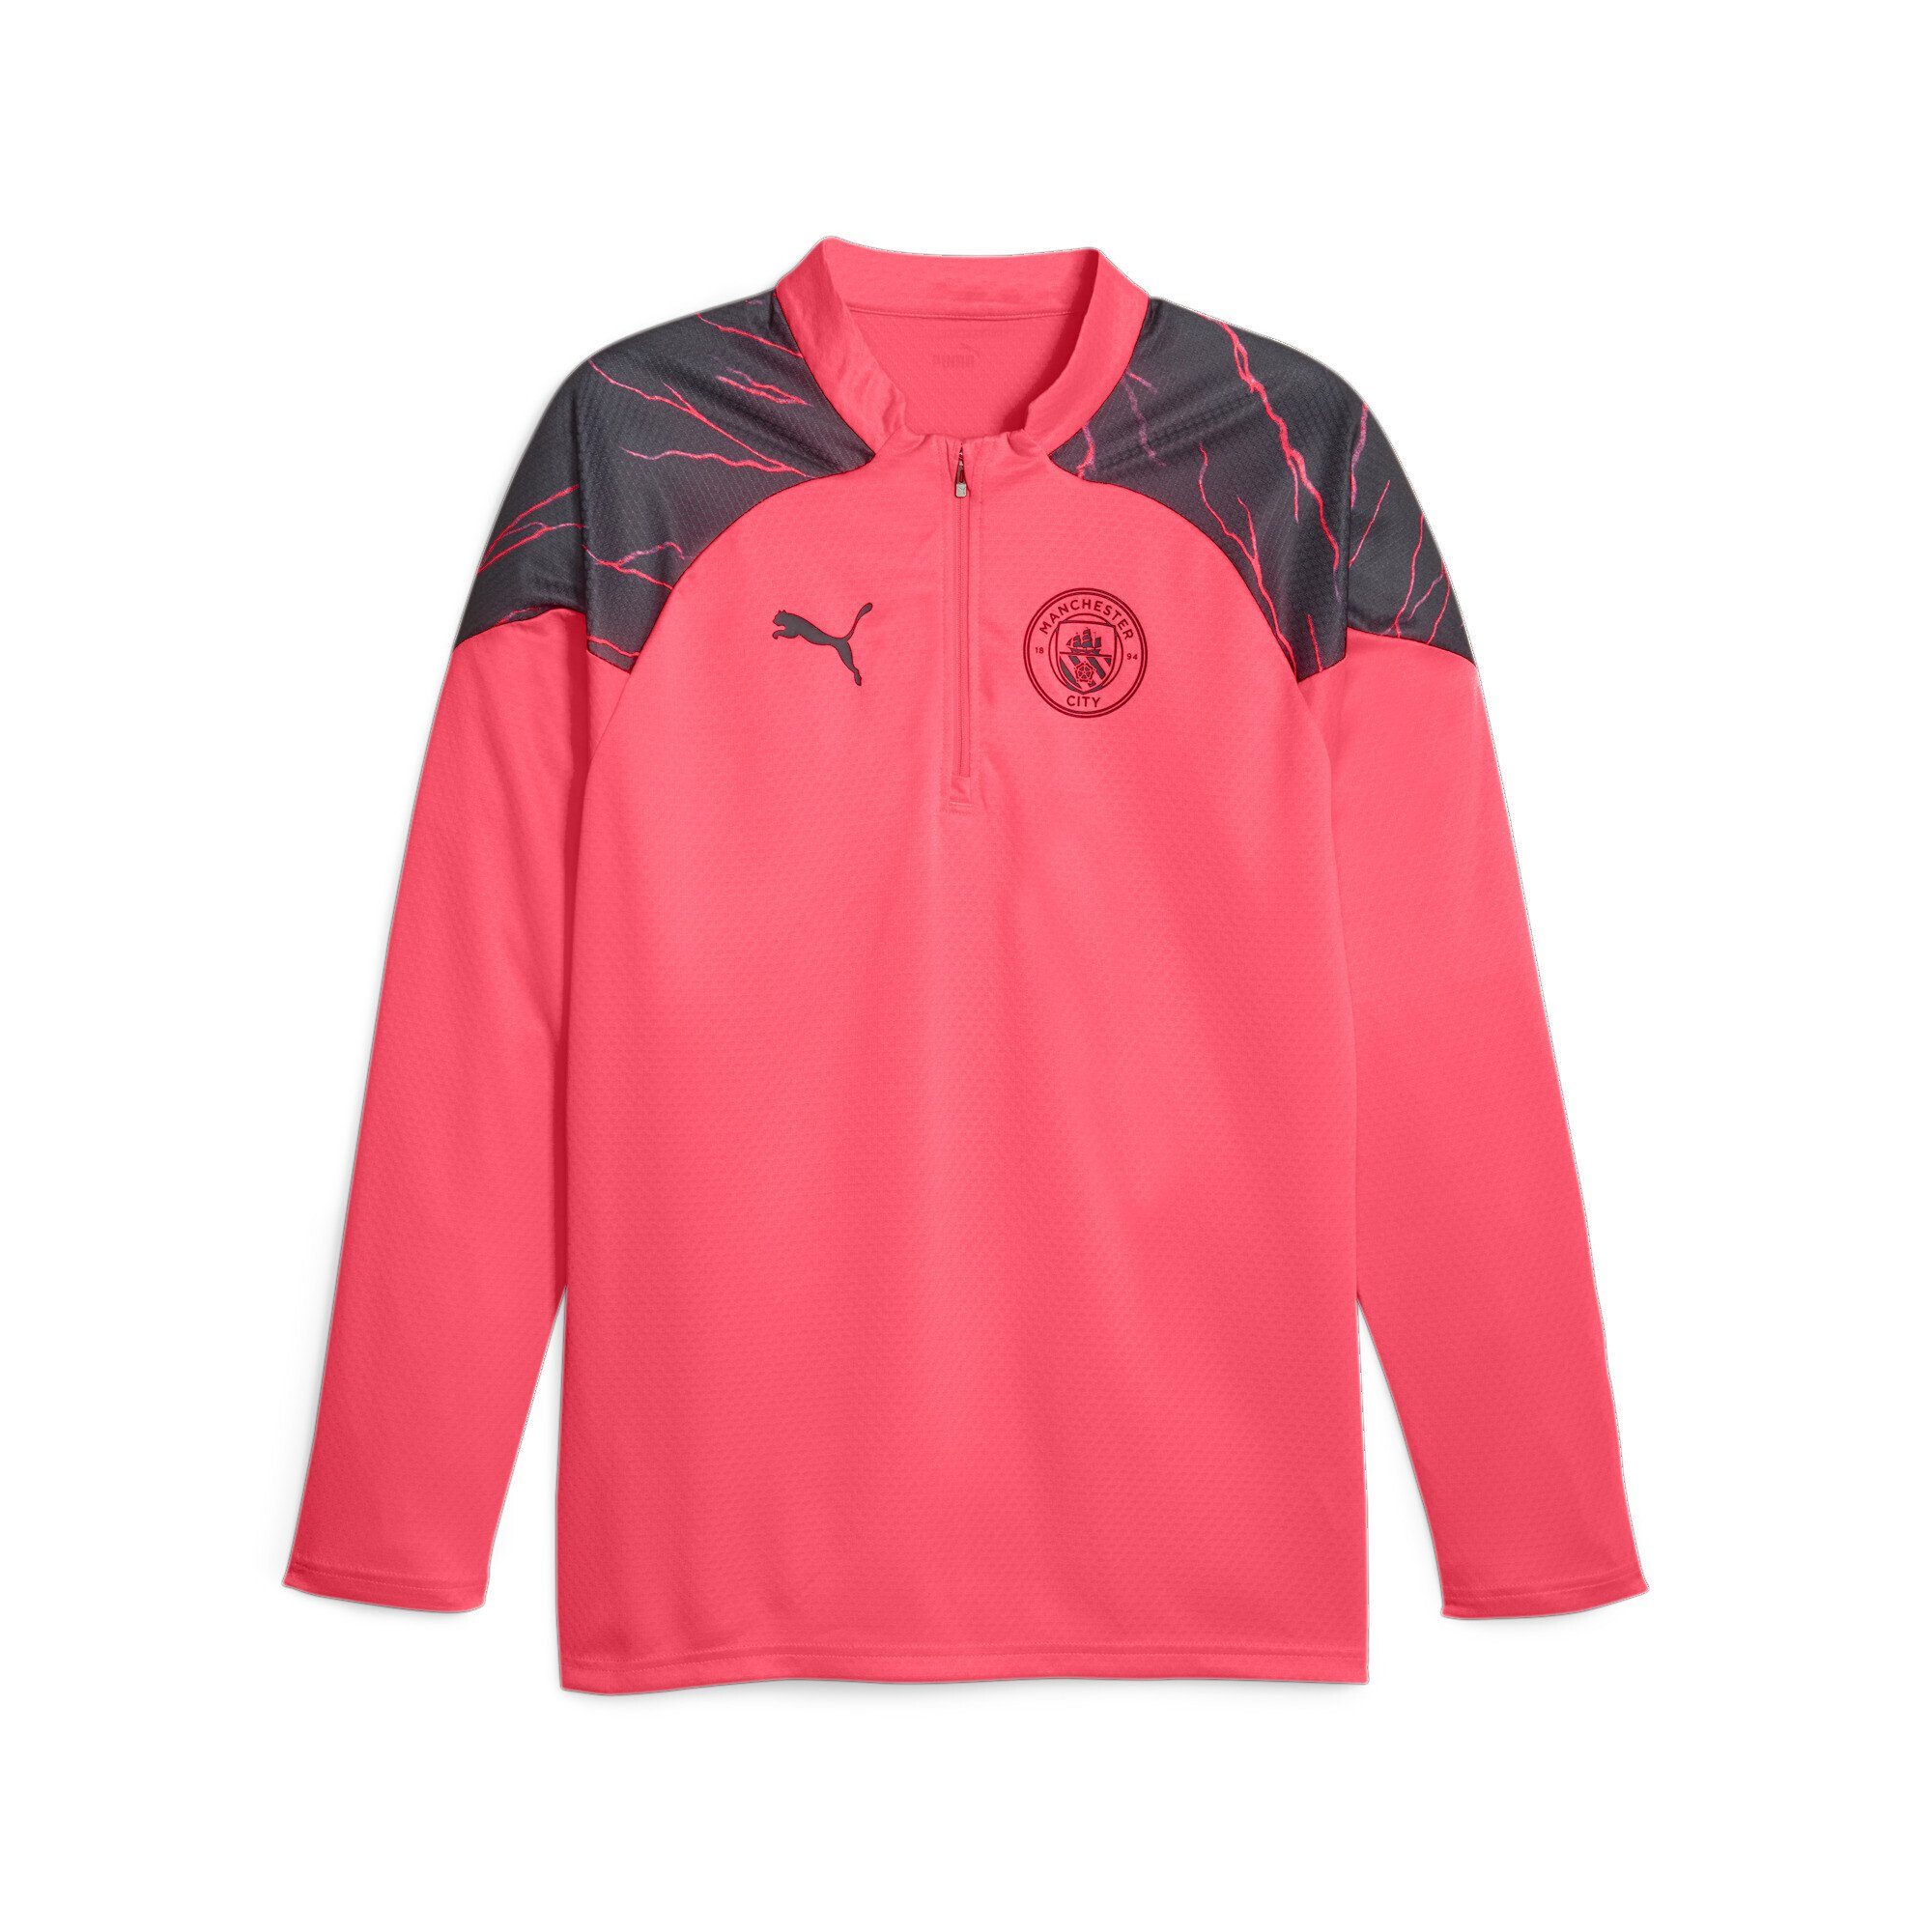 PUMA Trainingsshirt Manchester City Fußball-Trainings-Top mit Viertelreißverschluss Sunset Glow Dark Navy Pink Black